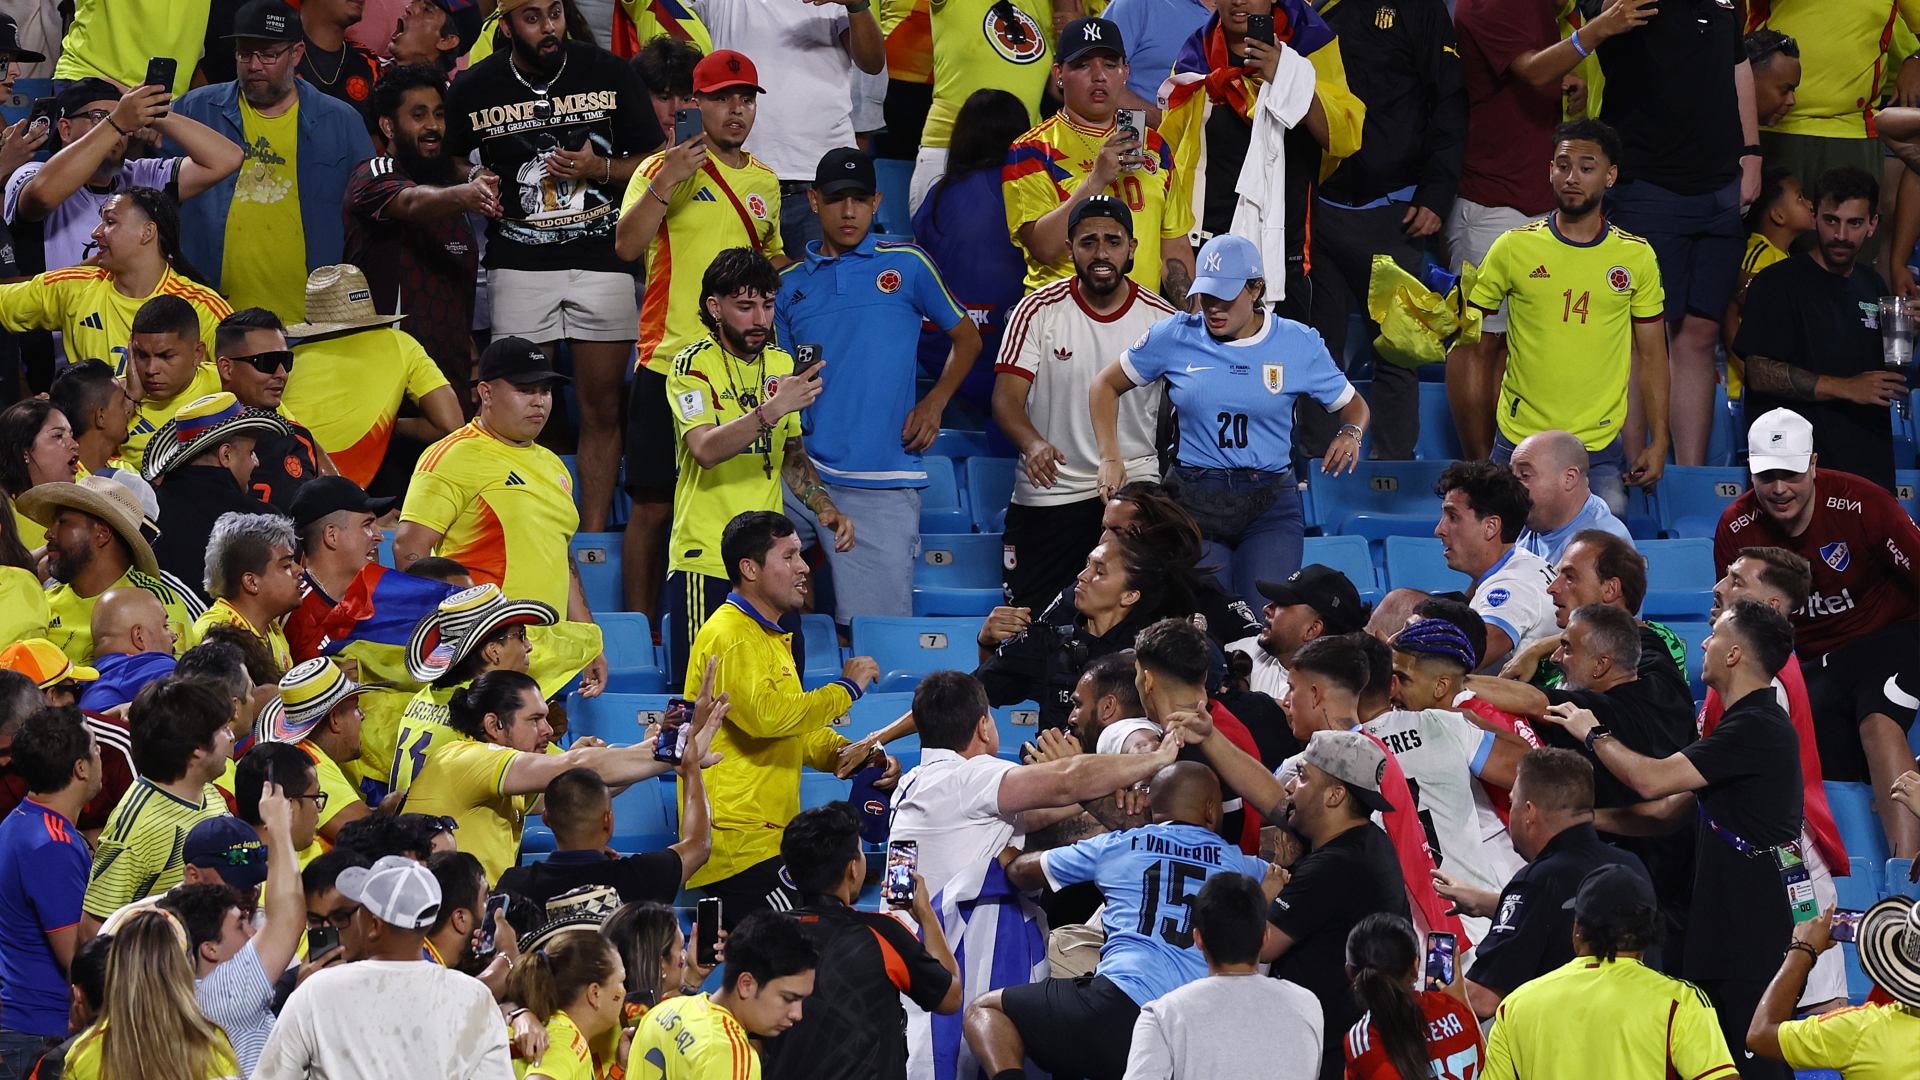 Violence mars Copa America clash